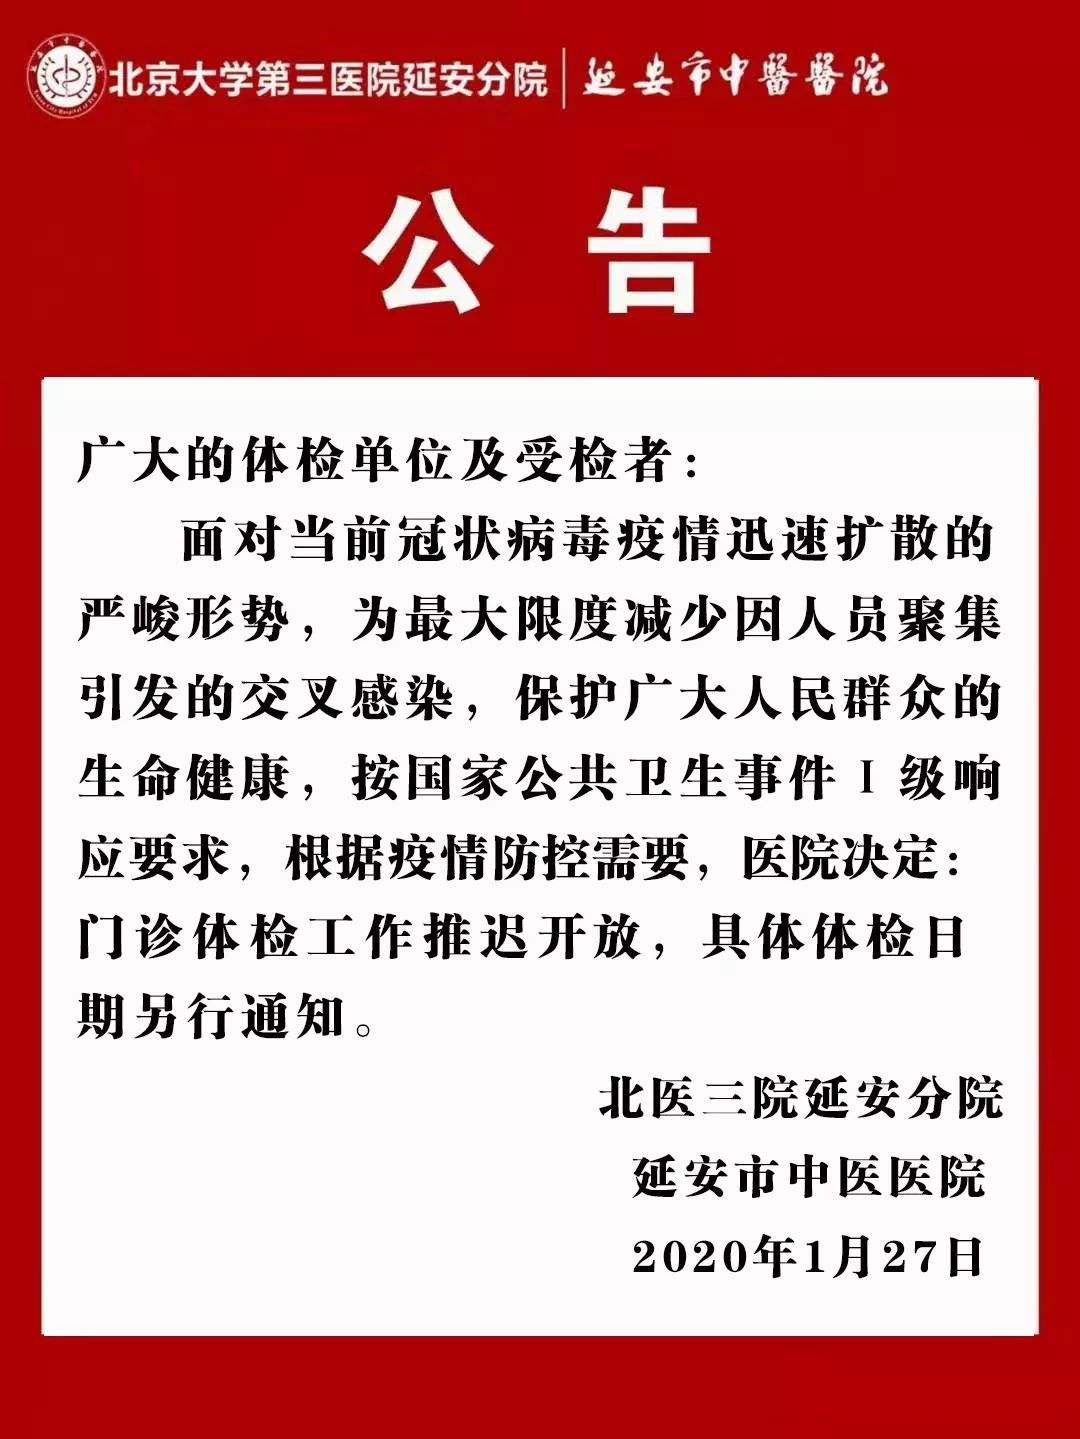 北京大学第三医院贩子联系方式_办法多,价格不贵联系方式安全可靠的简单介绍